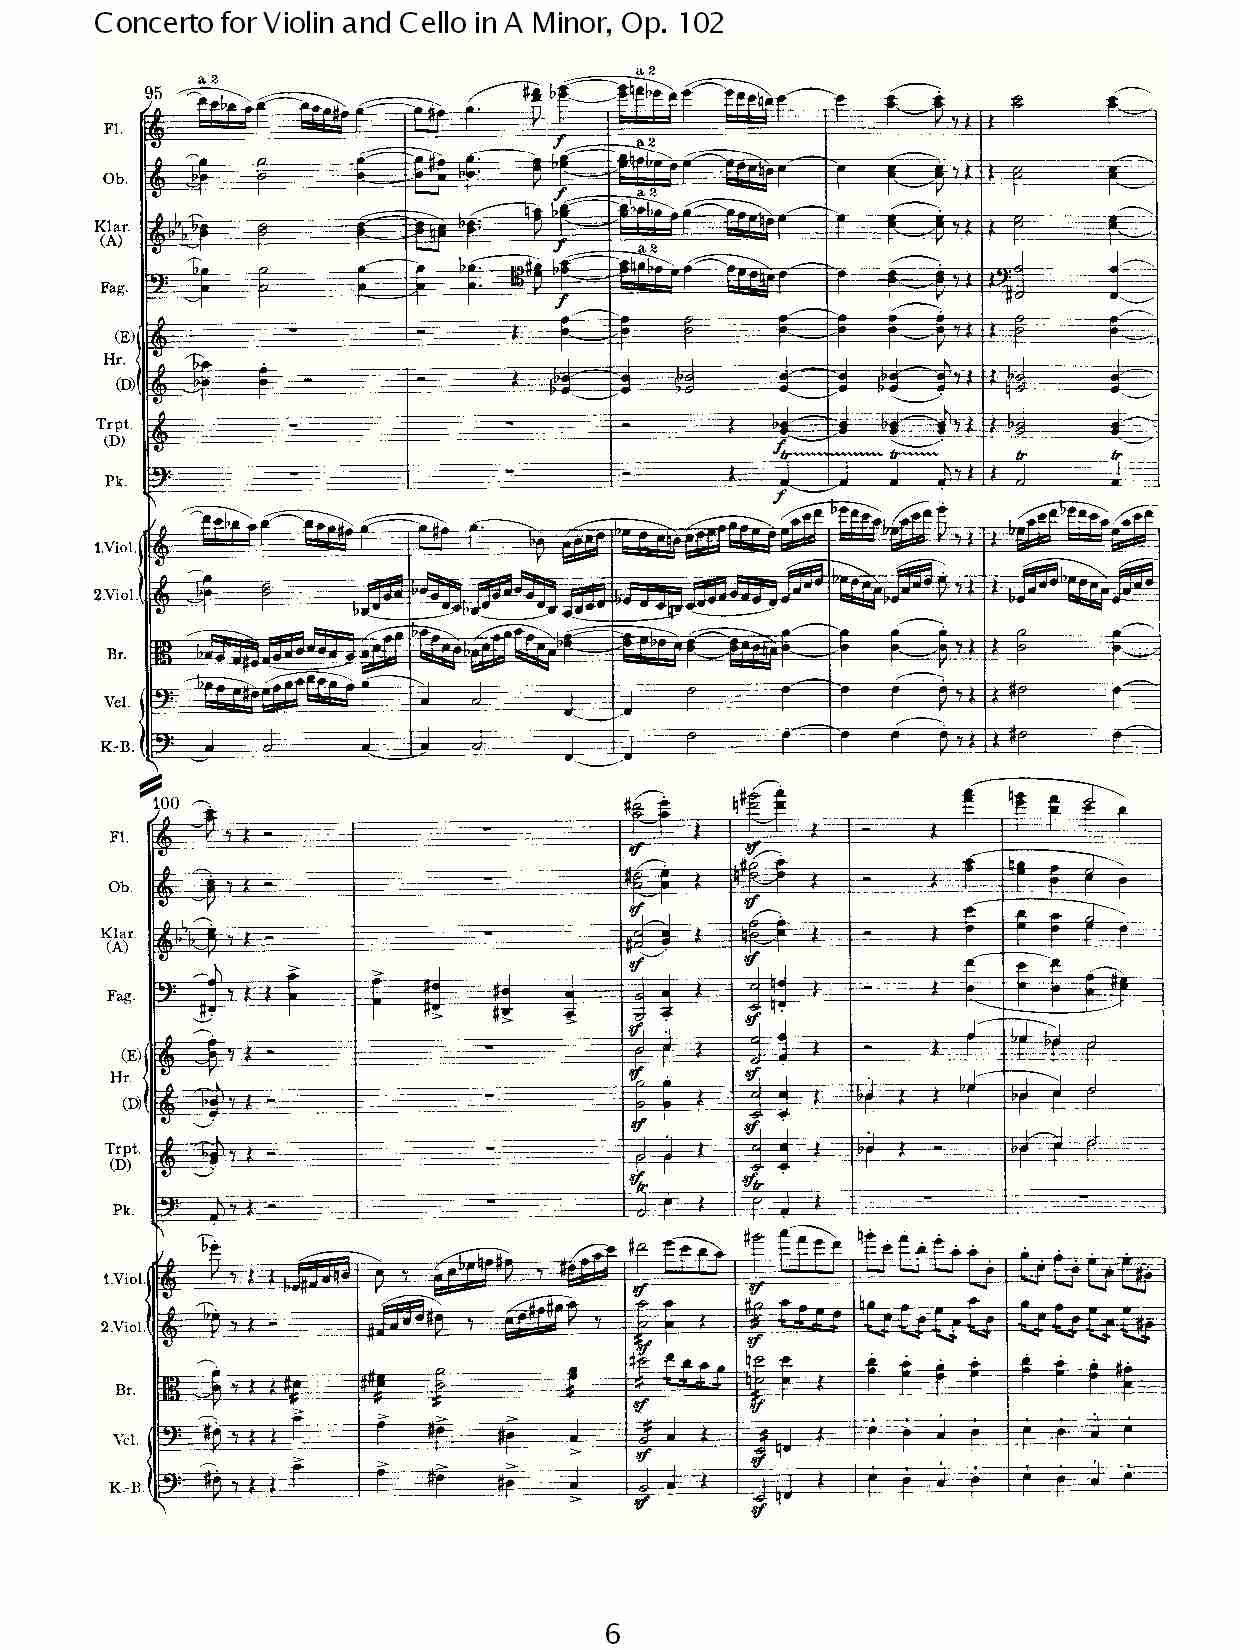 A小调小提琴与大提琴协奏曲, Op.102第一乐章（二）总谱（图1）